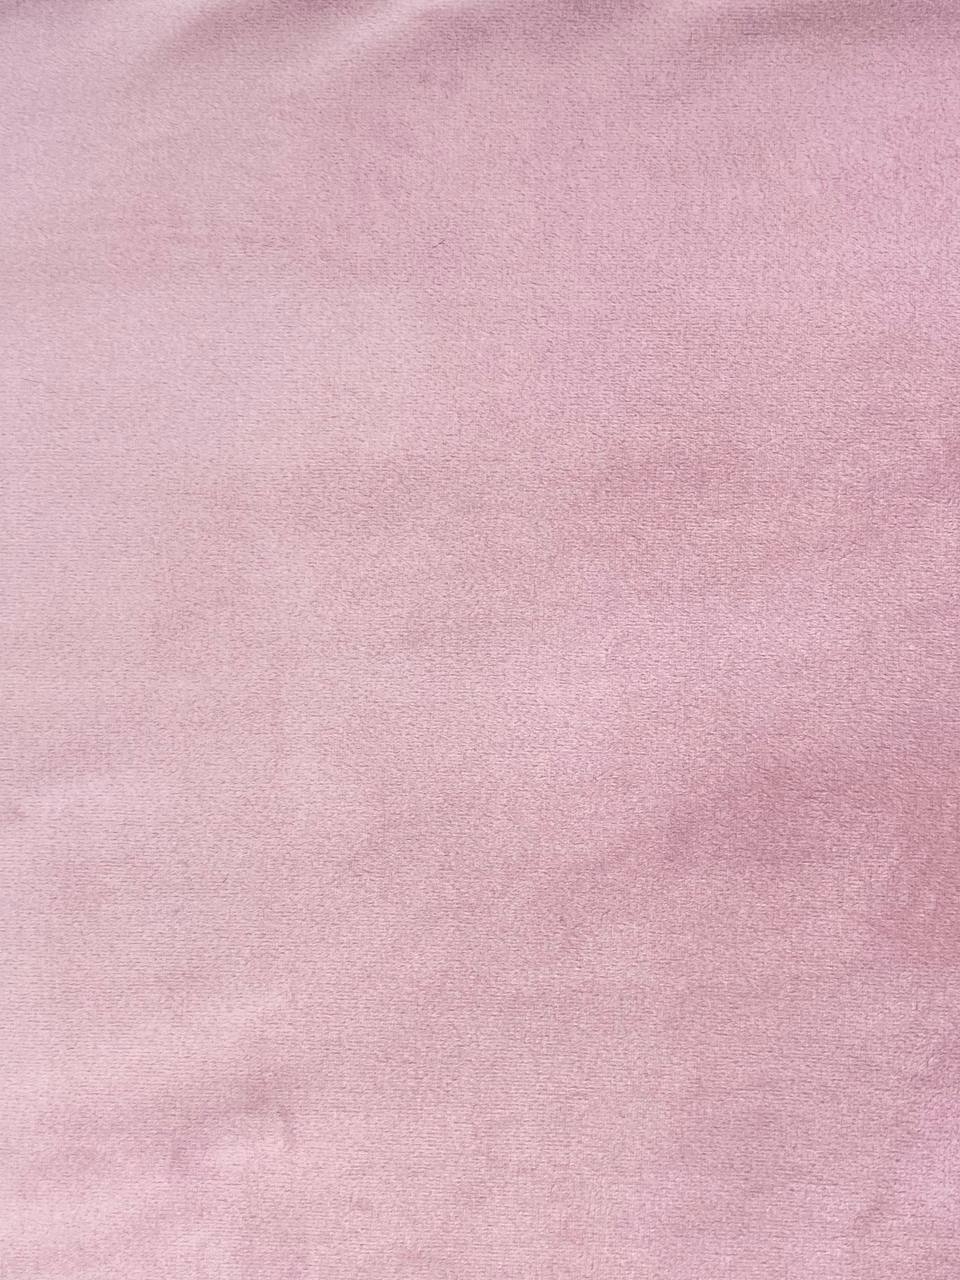 12. SOFT jasny róż/ baby pink